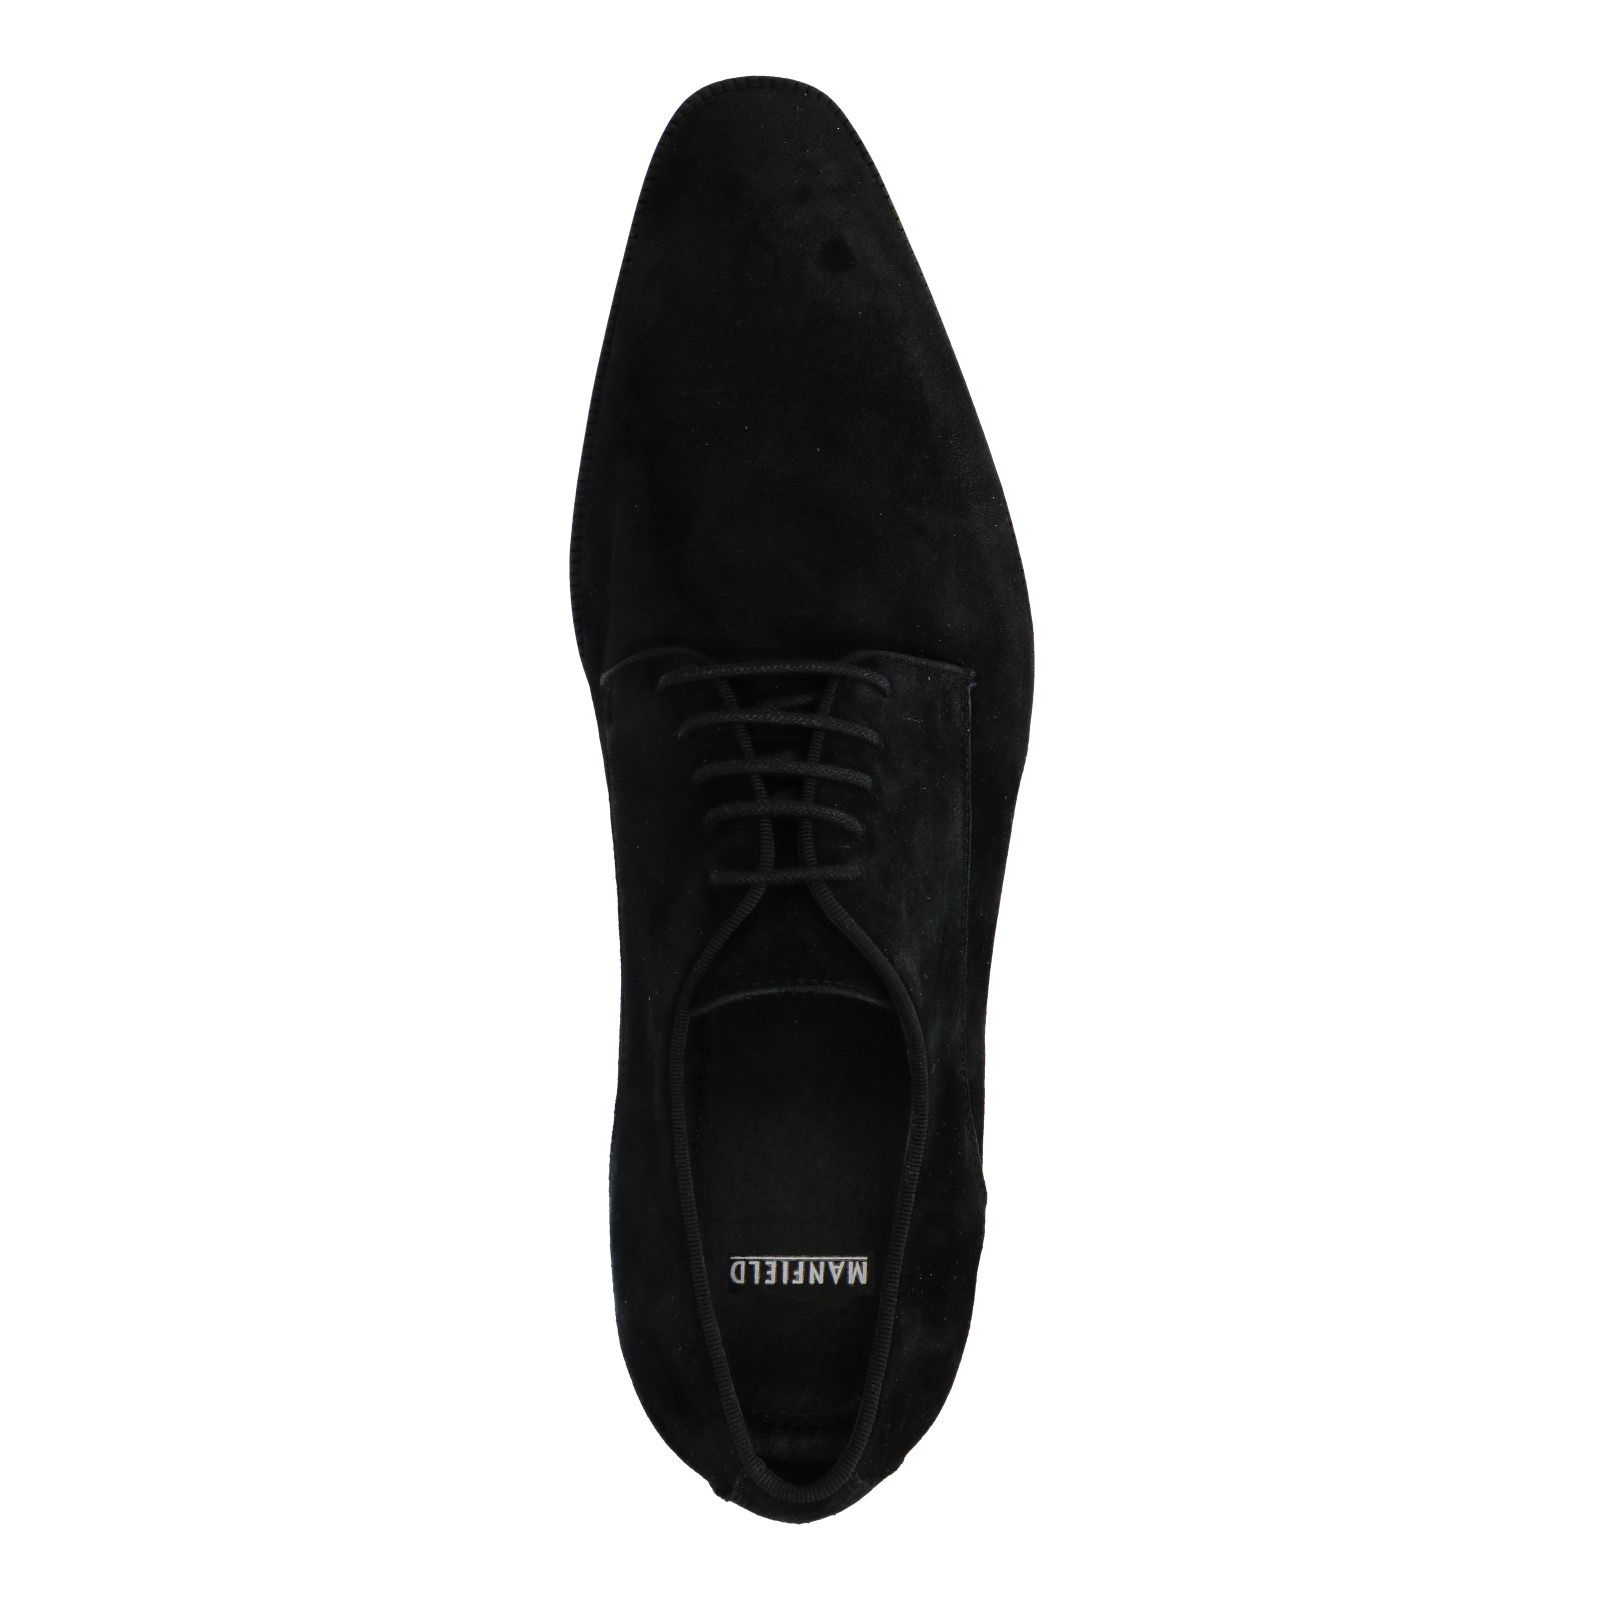 Chanel Sneakers aus Veloursleder - Schwarz - Größe 39 - 16020451